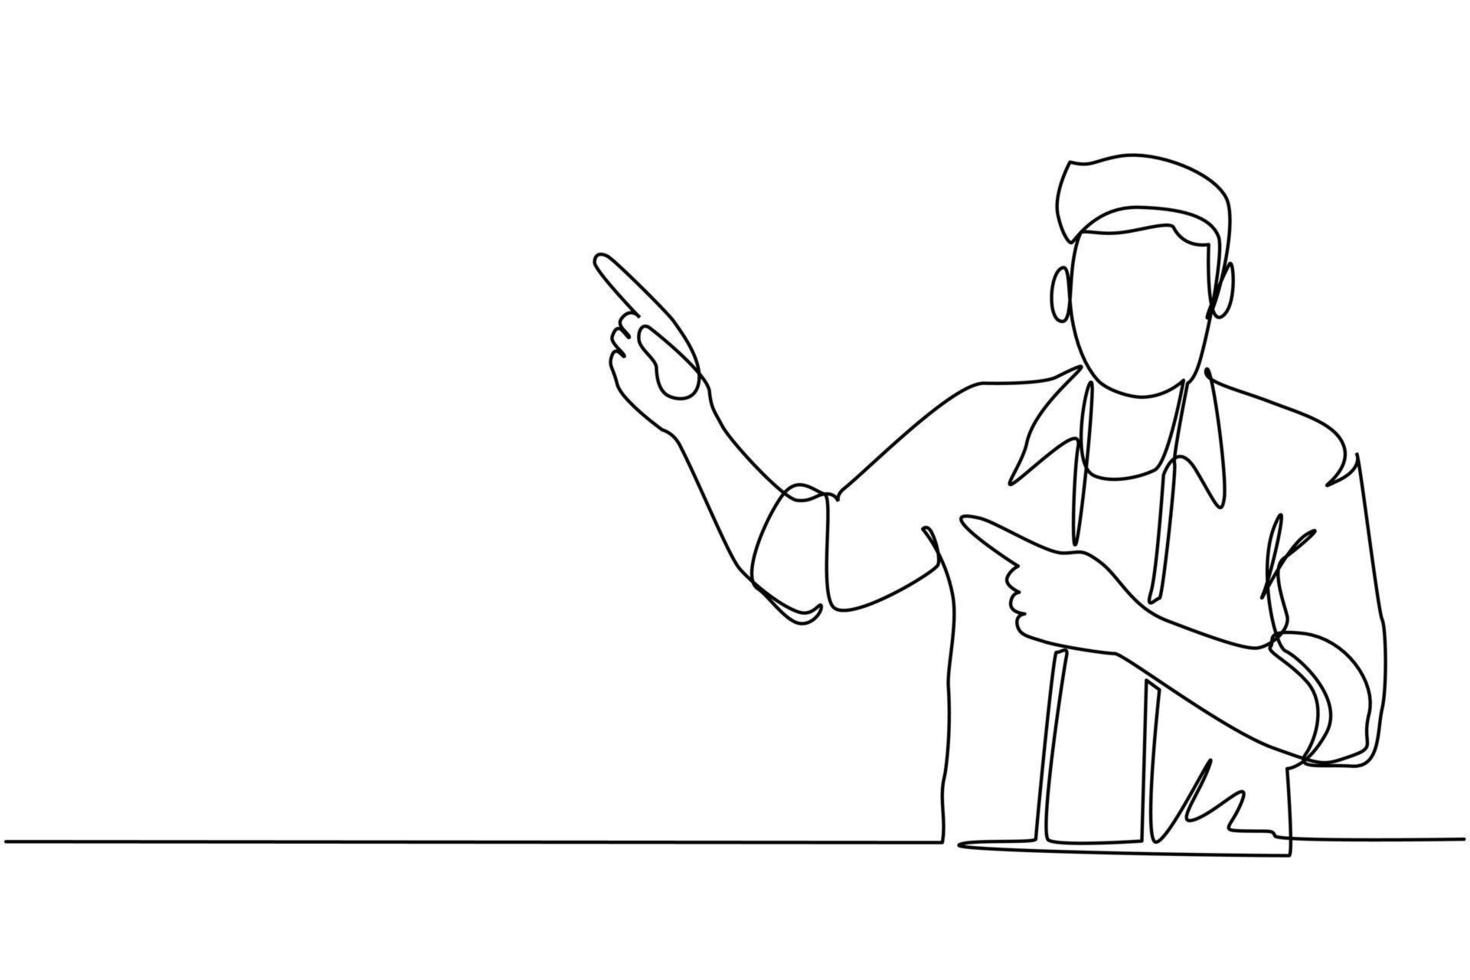 en rad ritning ung man pekar bort händerna tillsammans och visar eller presenterar något medan han står och ler. känslor och kroppsspråk. kontinuerlig linje rita design grafisk vektor